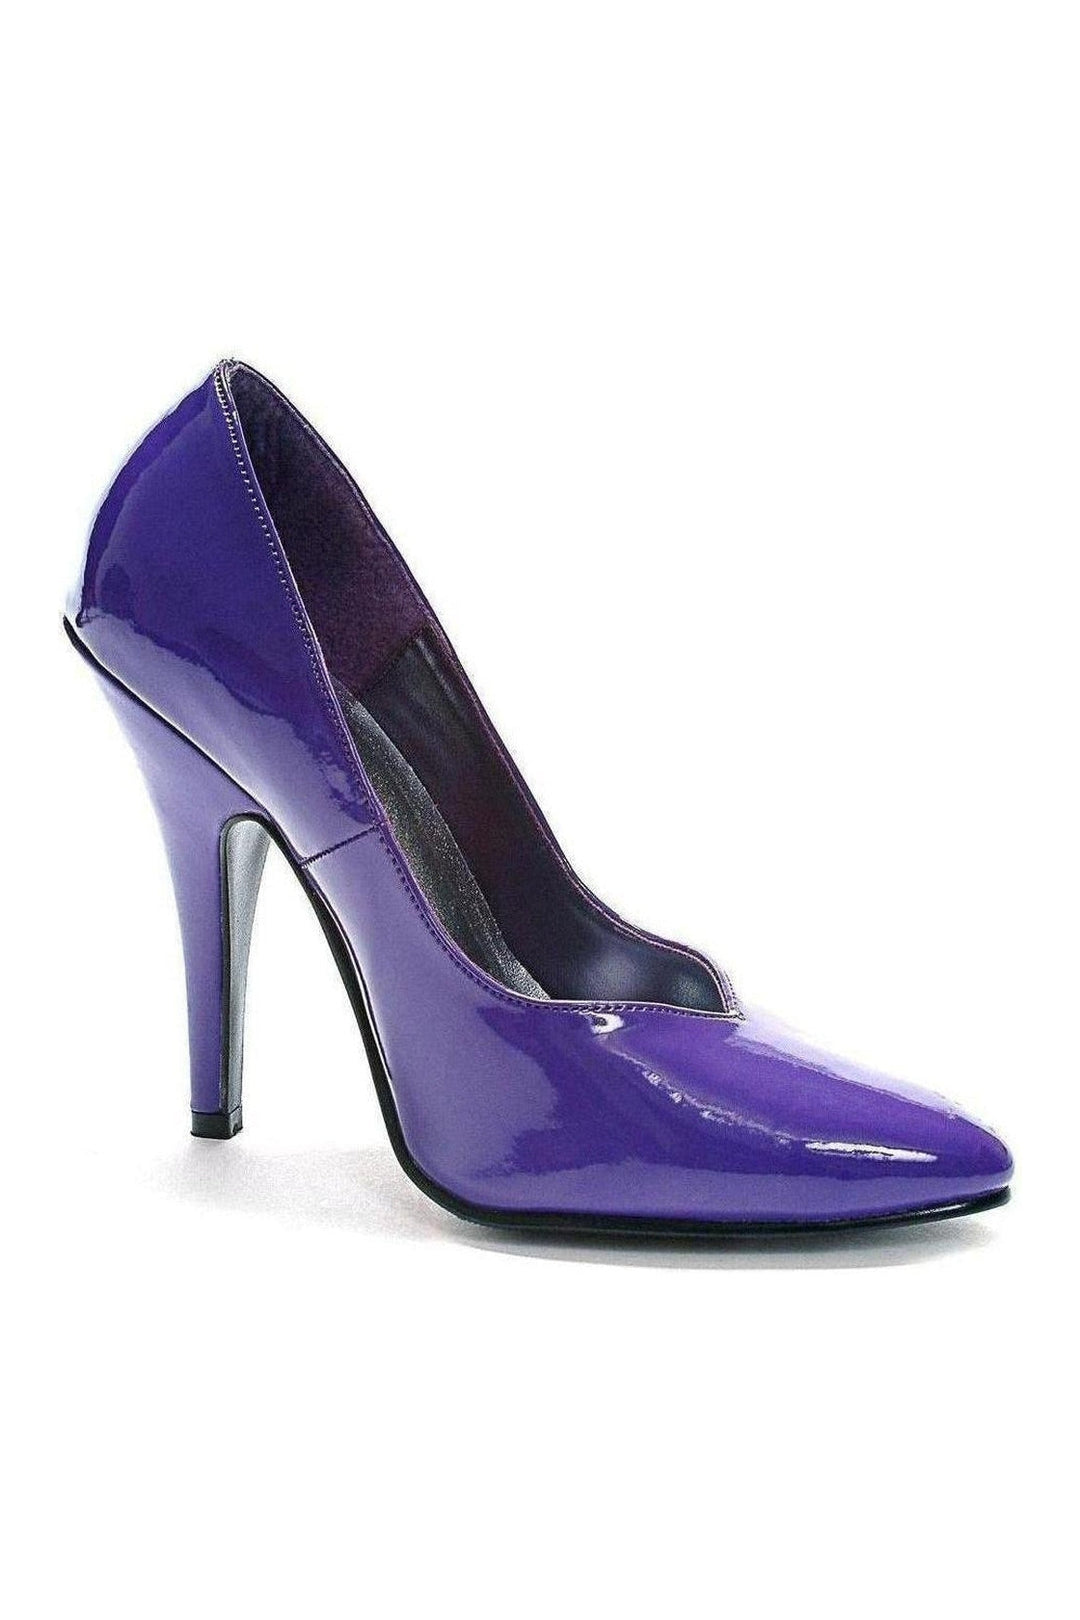 511-BRANDE Pump | Purple Patent-Ellie Shoes-SEXYSHOES.COM